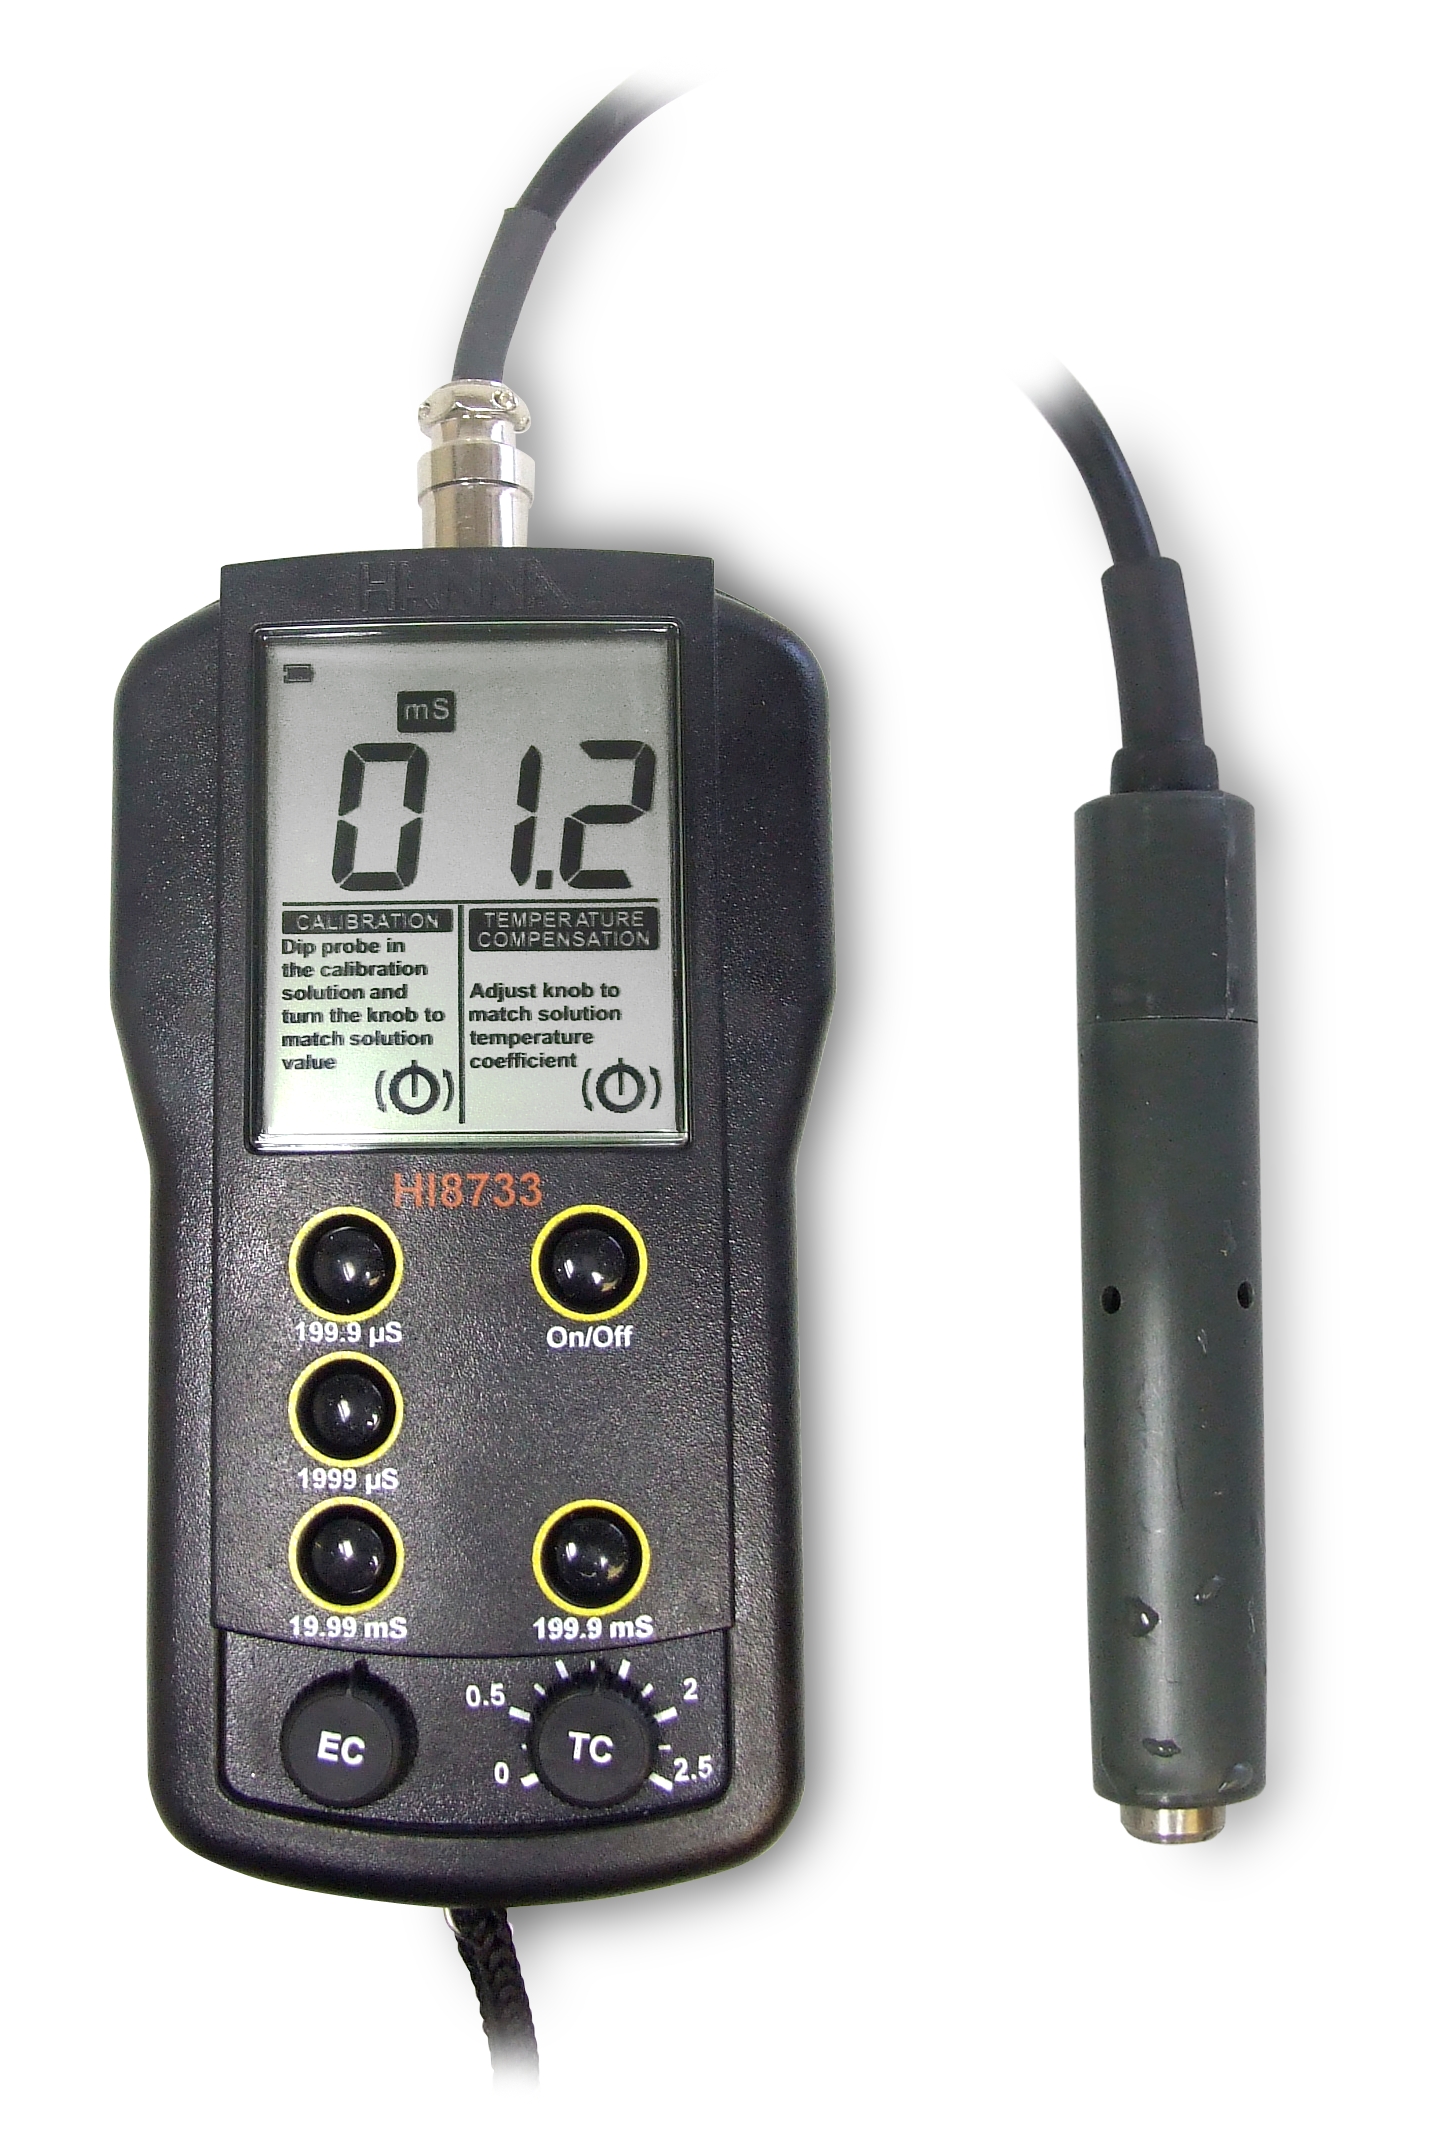 Review Spesifikasi dan Harga Jual Hanna Instruments HI-8733N Multi-Range Conductivity Meter original termurah dan bergaransi resmi